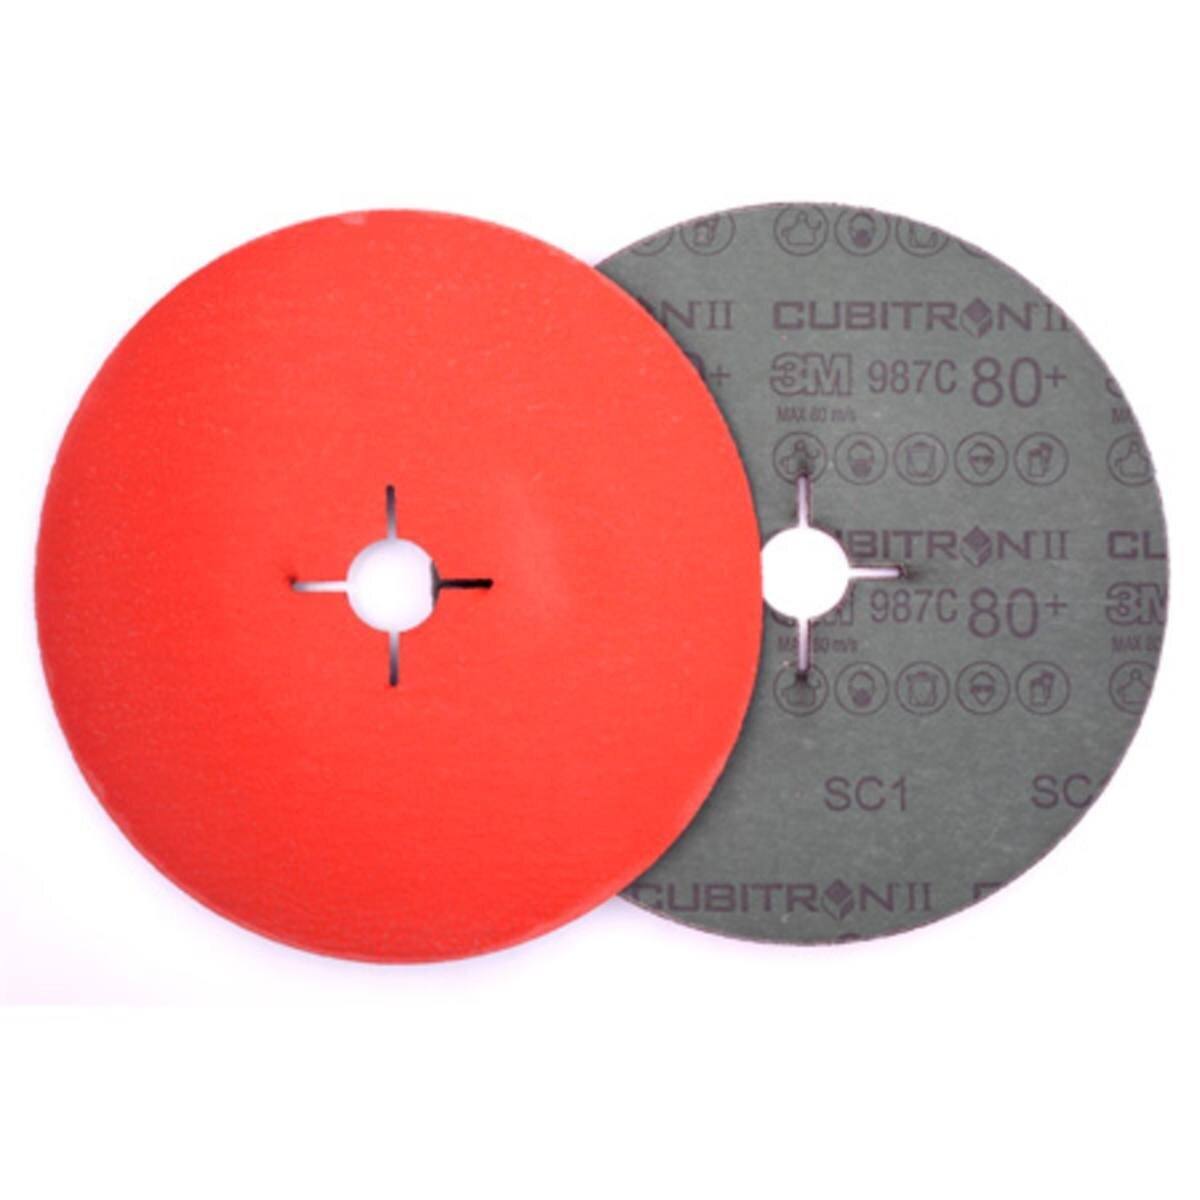 3M Cubitron II Fibre disc 987C, 180 mm, 22.23 mm, 80+ #464047